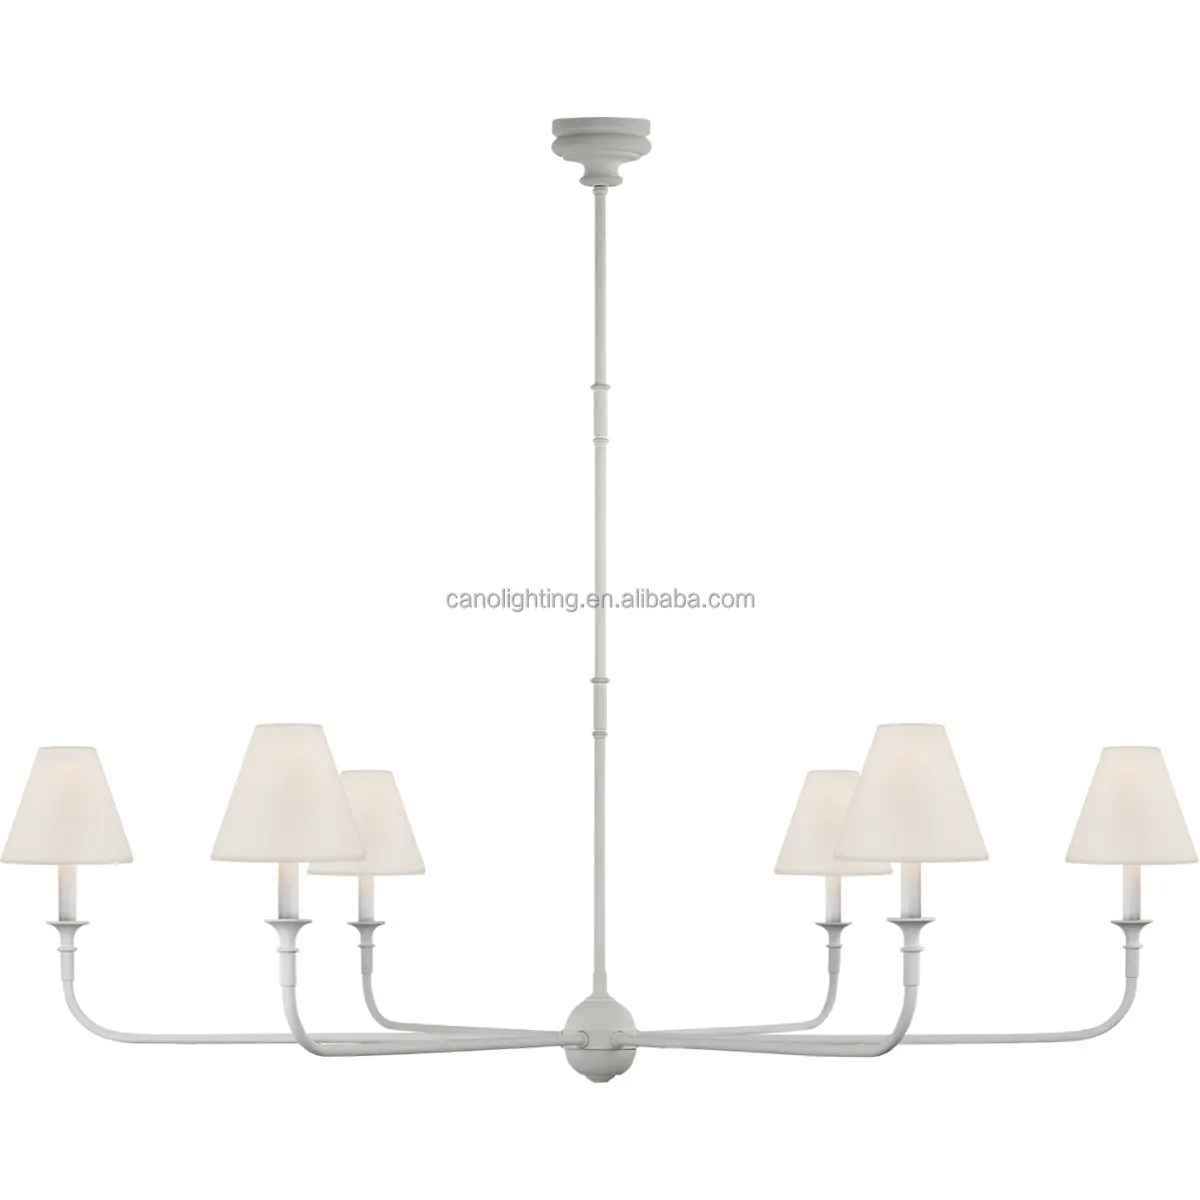 Anging-Lámpara LED decorativa para decoración del hogar, candelabros de metal, iluminación colgante